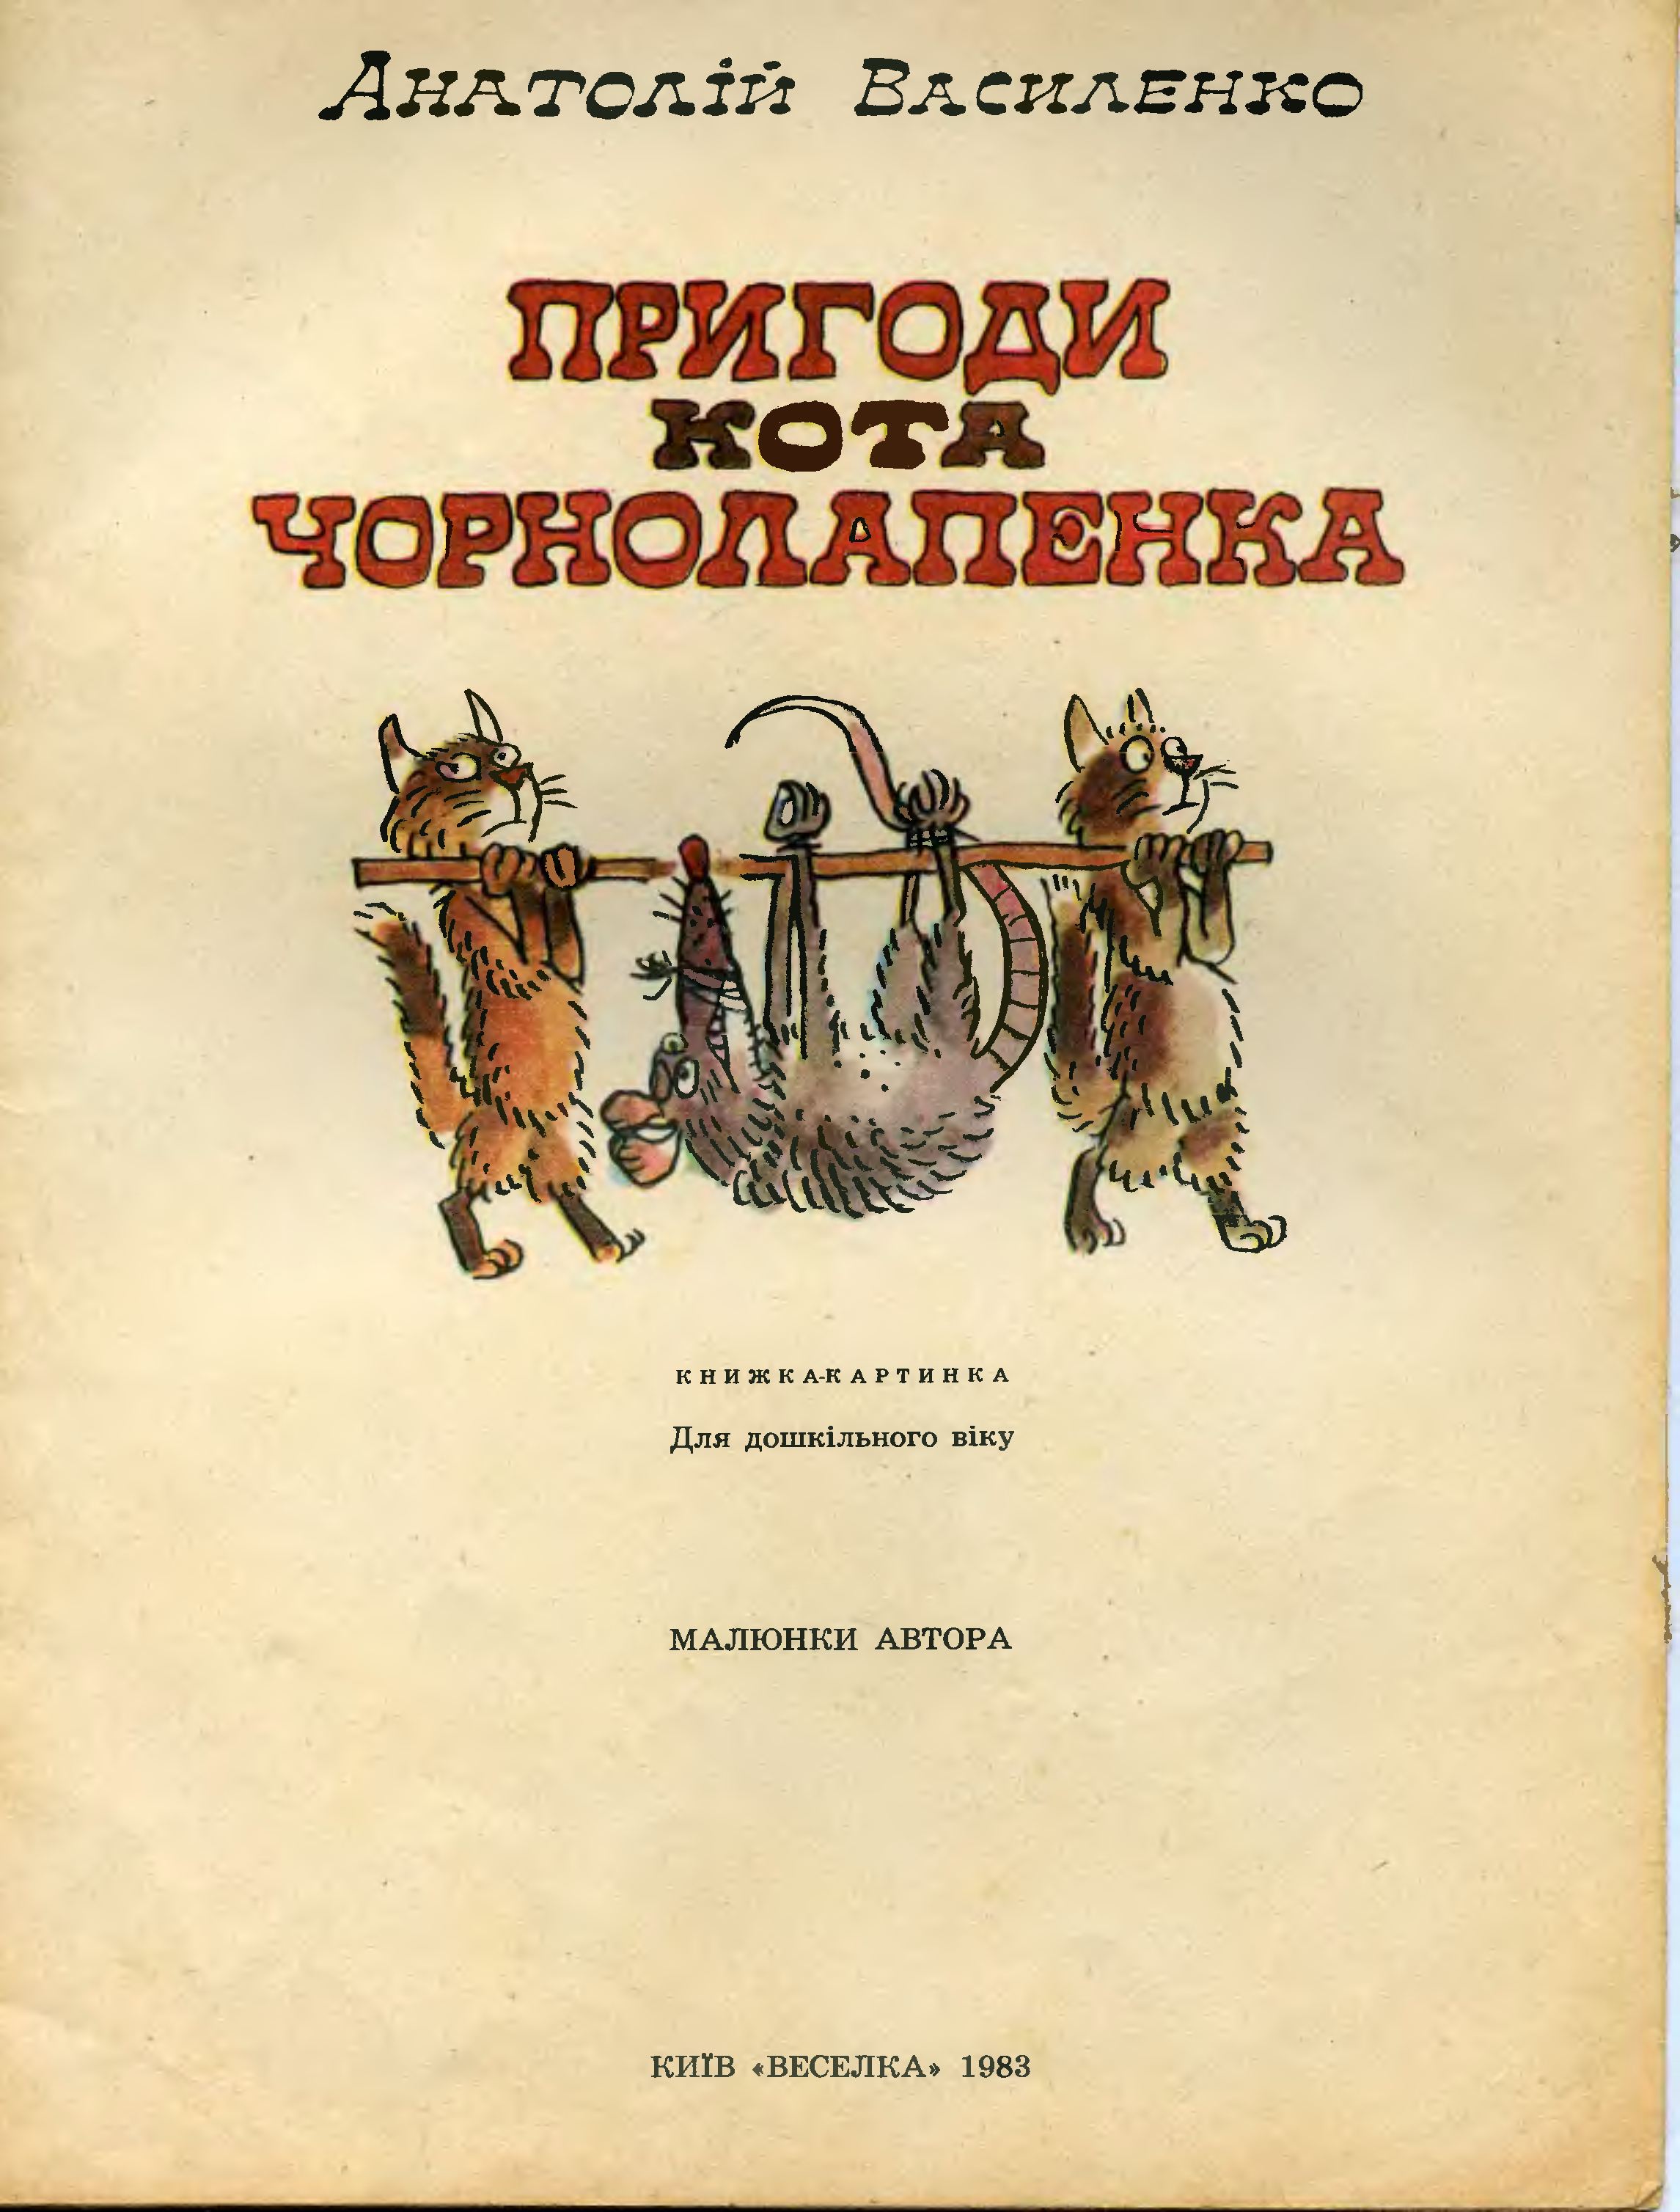 А. Василенко. Приключения кота Чернолапенко, 1983, с.02.jpg